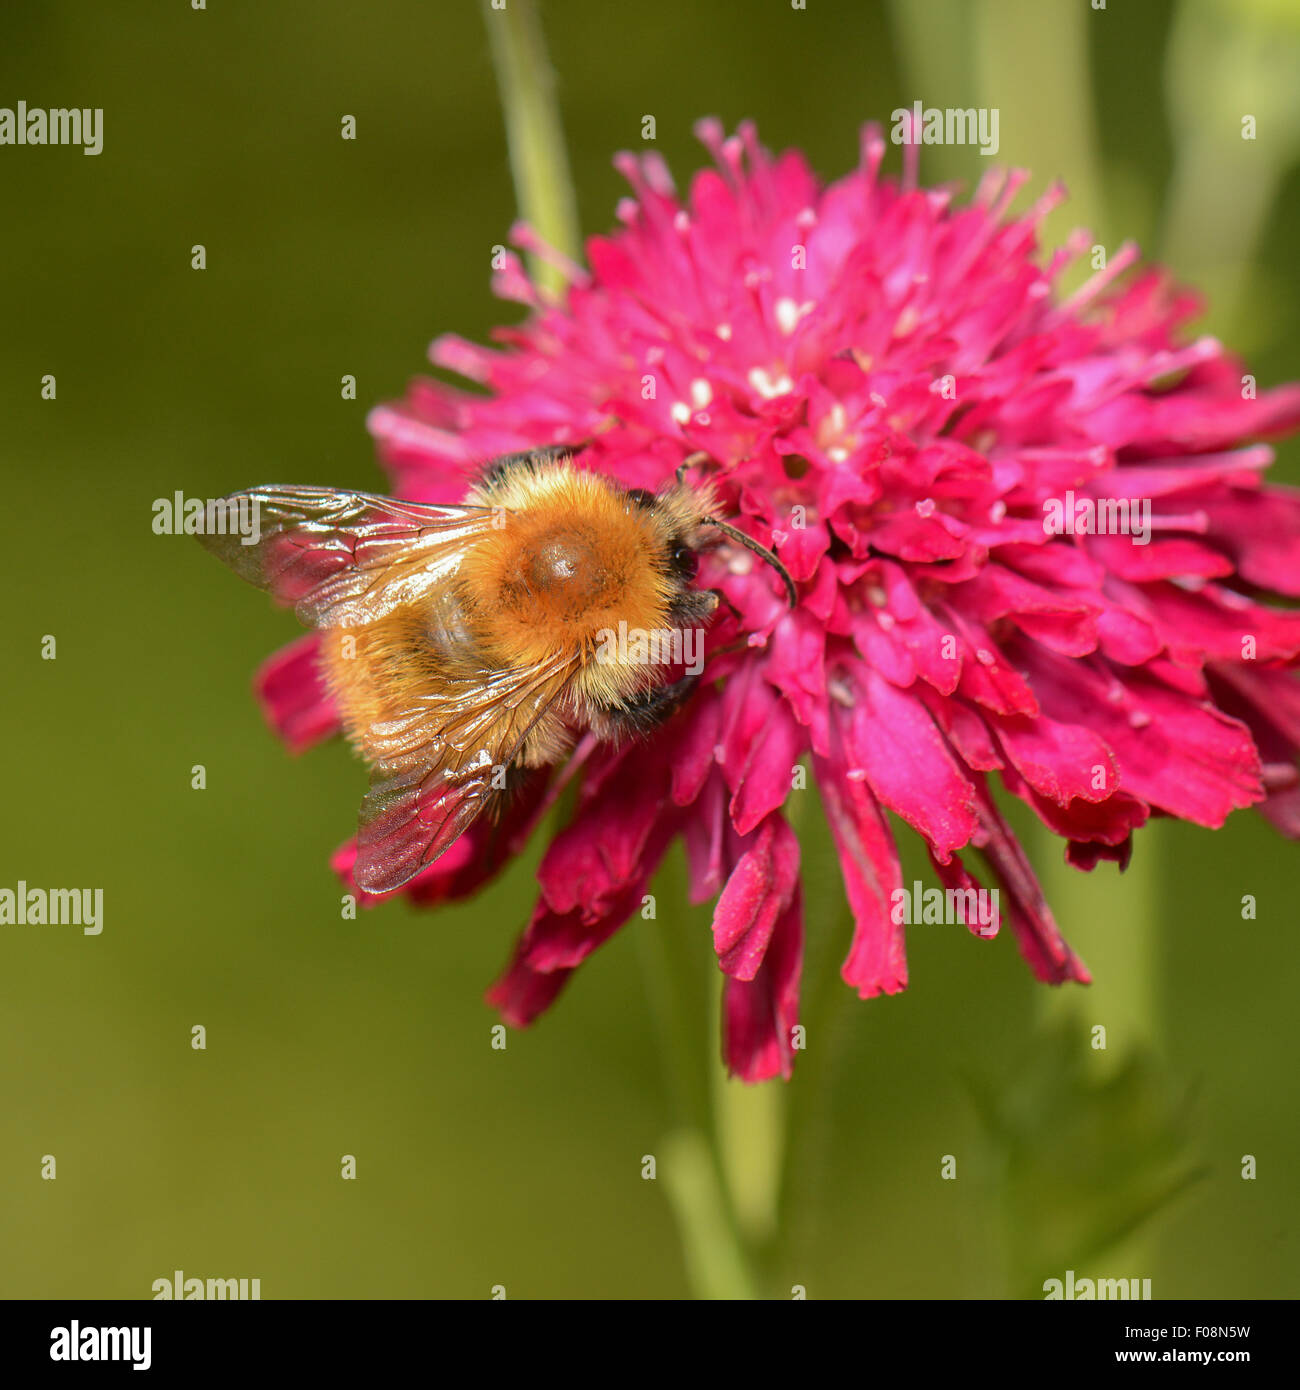 Carda comune bumblebee (bumbus pascuorum) alimentazione in rosa puntaspilli fiore Foto Stock